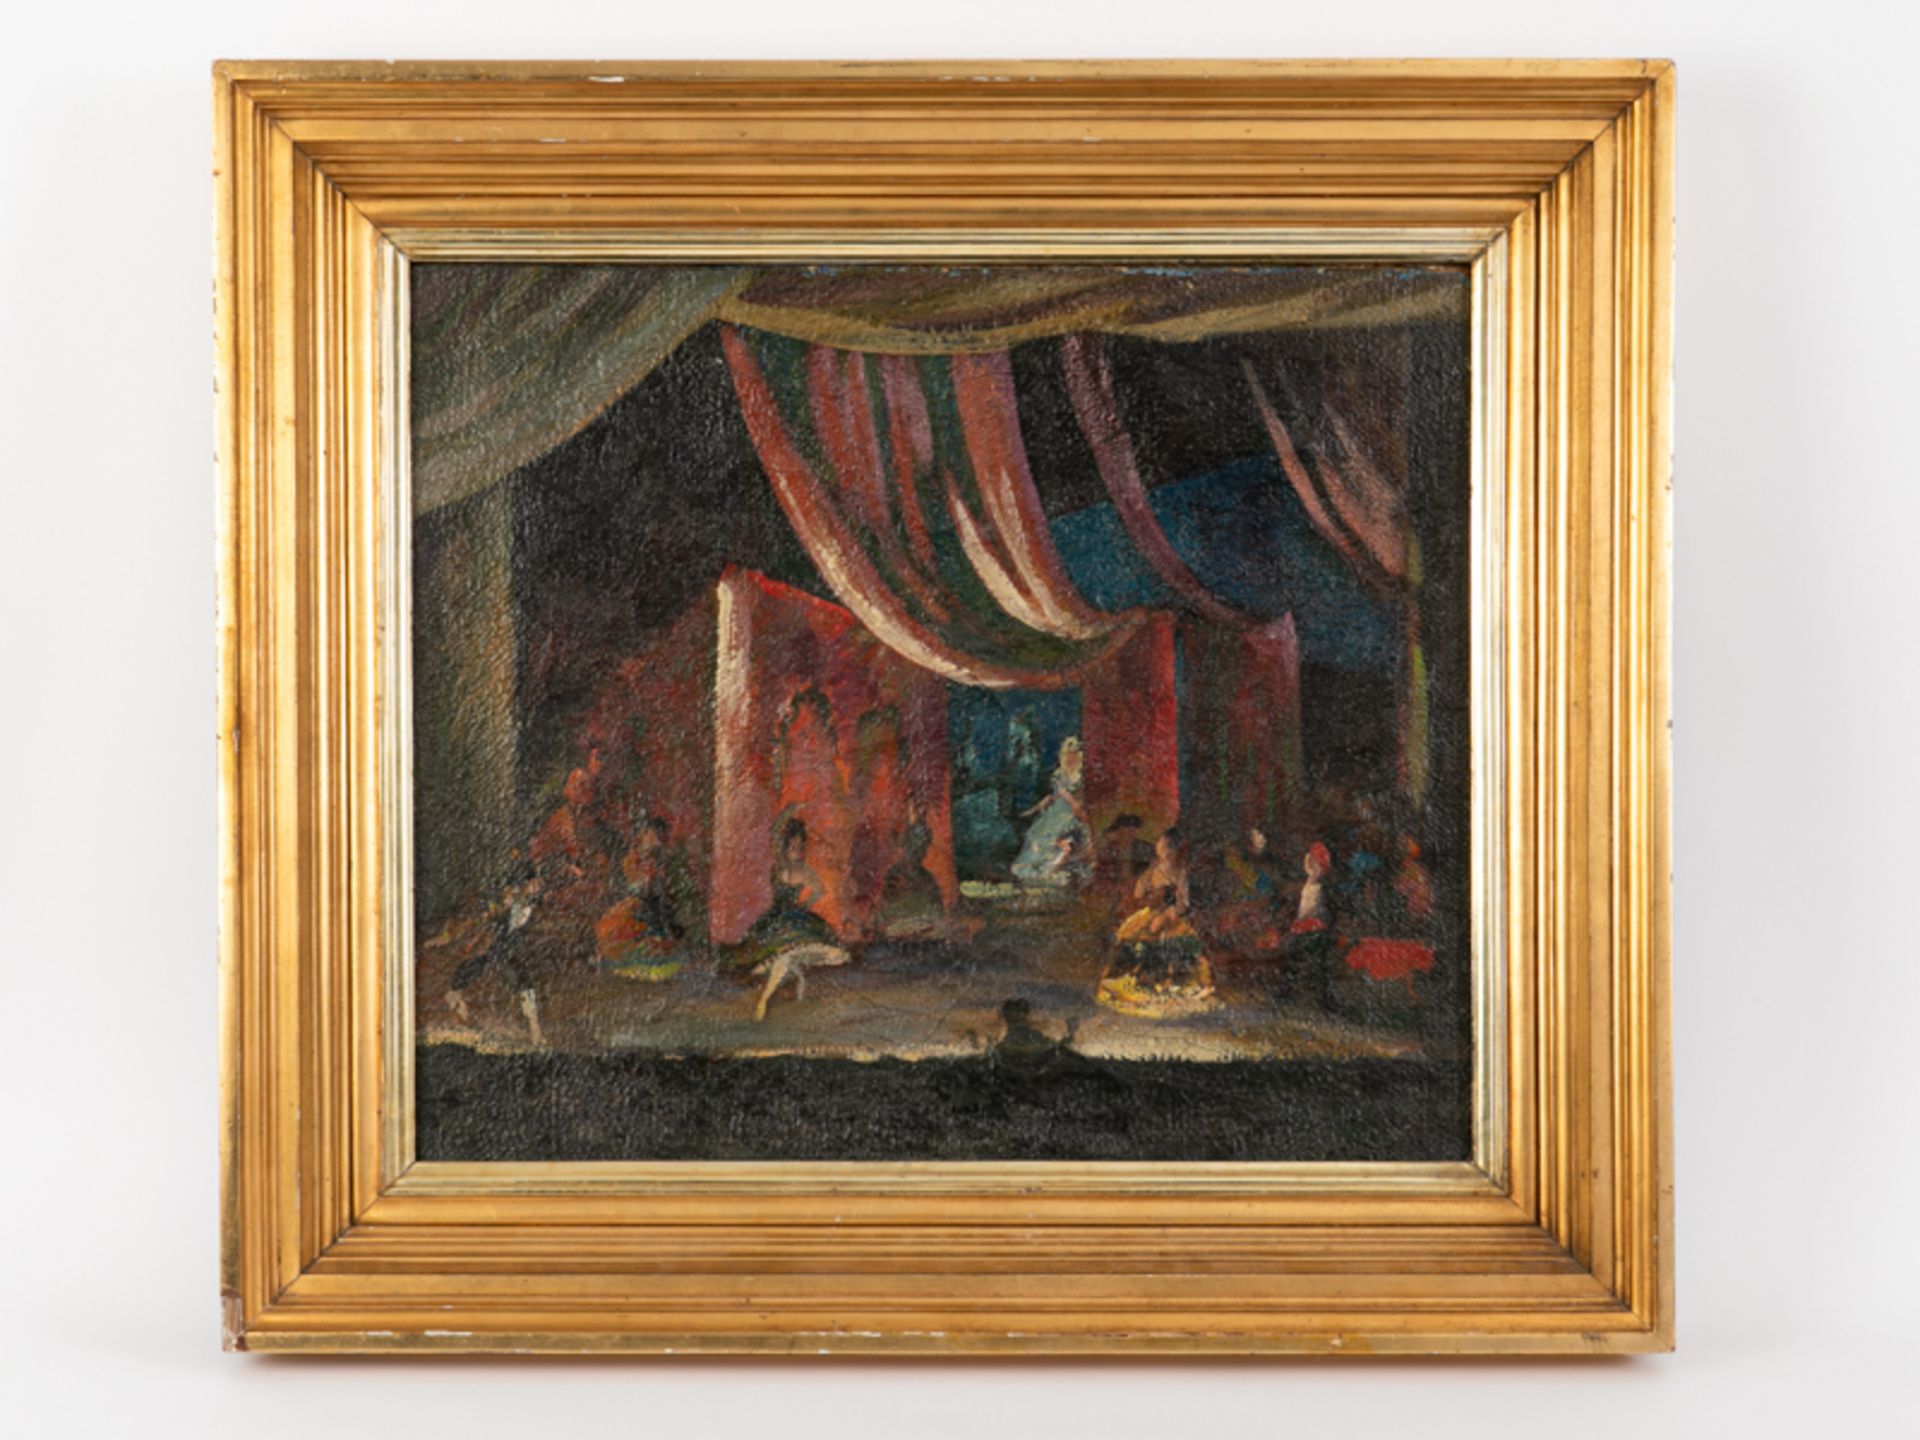 Deutscher Maler ("Richard M.... (?)", 1. Hälfte 20. Jahrhundert). Öl auf (grober) Leinwand, Theater-